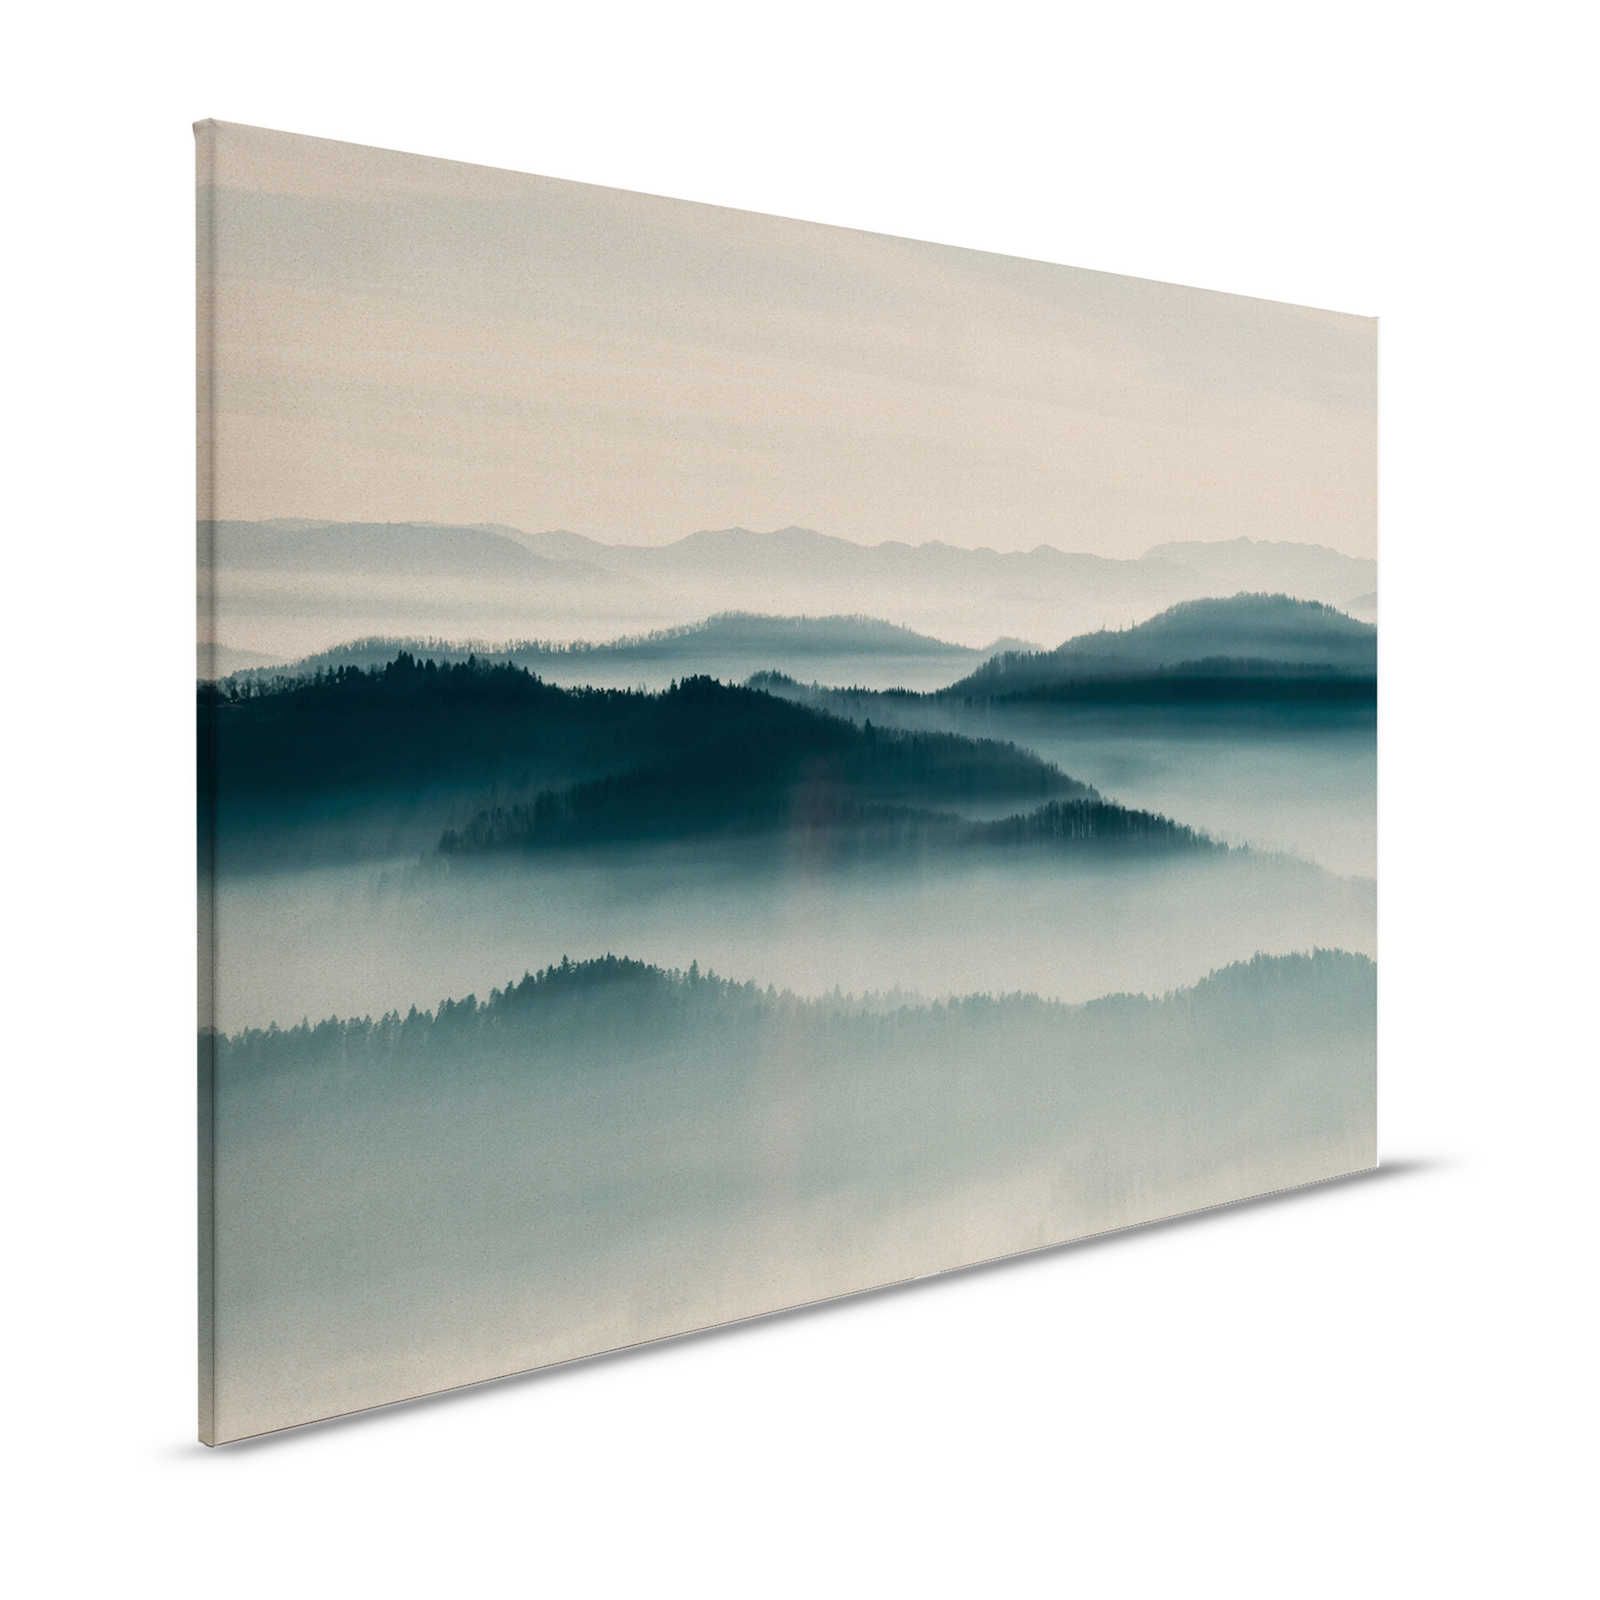 Horizon 1 - Canvas schilderij met mist landschap, natuur Sky Line - 1.20 m x 0.80 m
